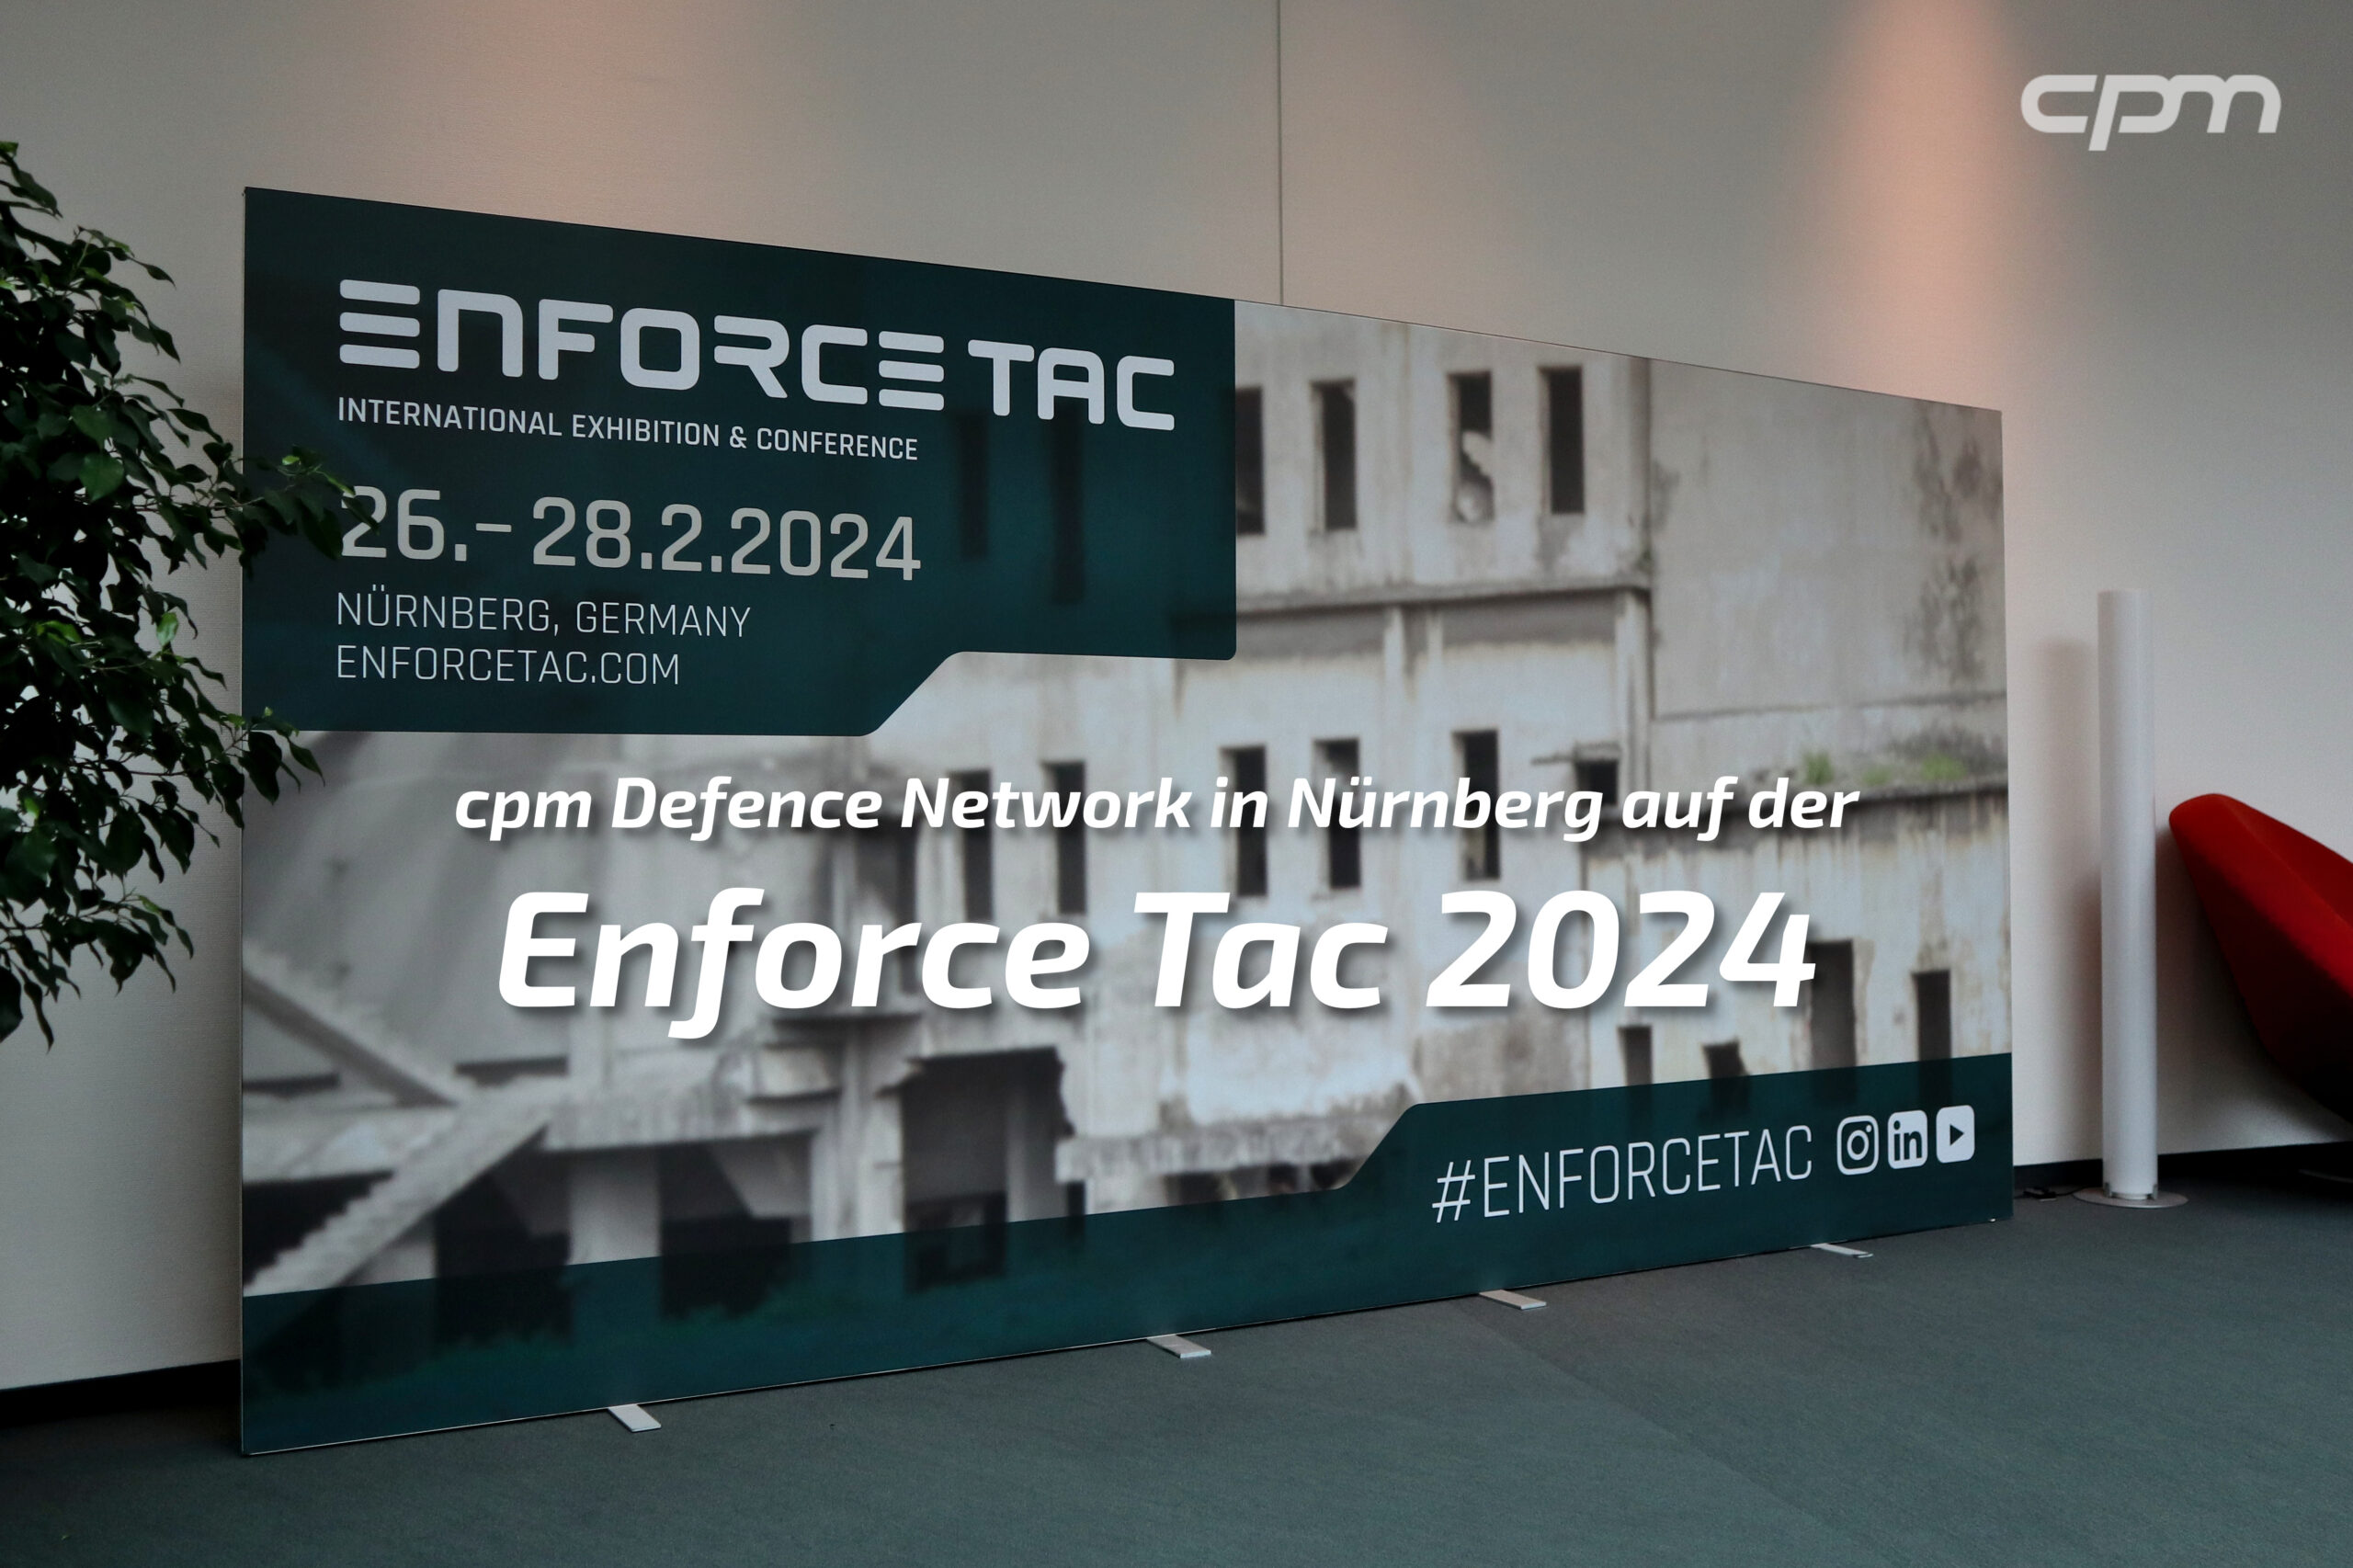 cpm Defence Network auf der Enforce Tac 2024 in Nürnberg.